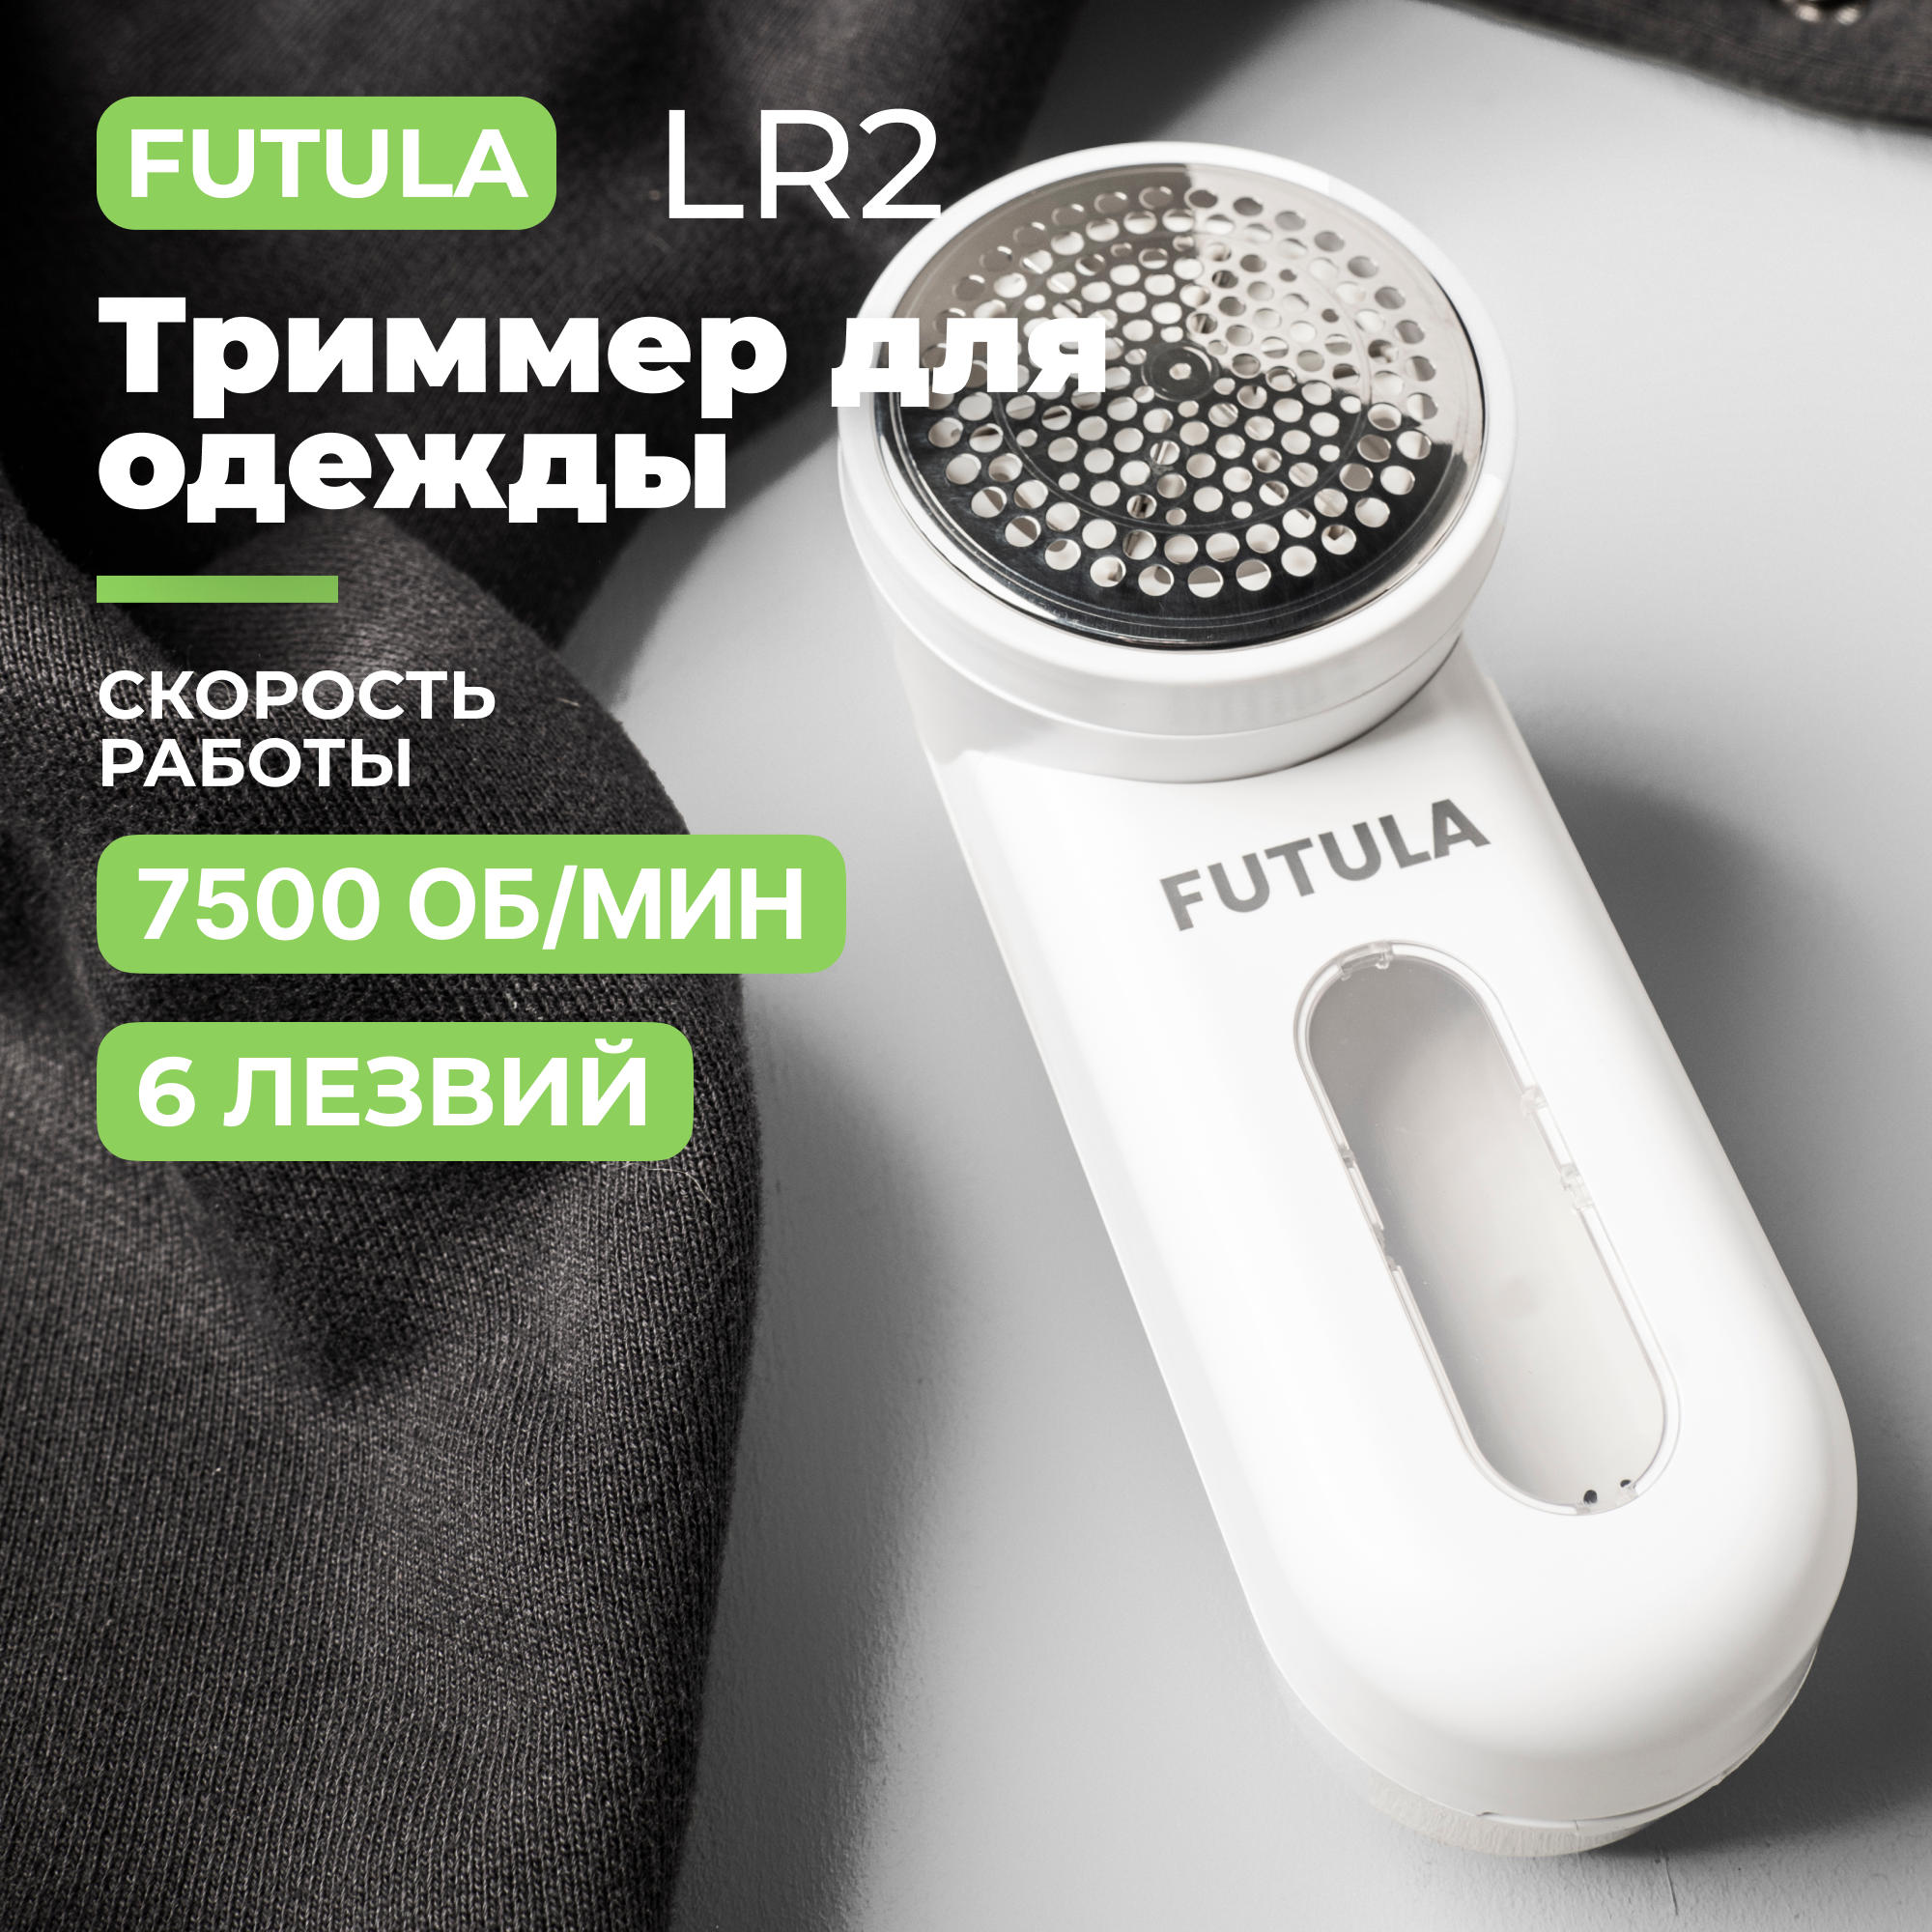 Машинка для удаления катышков, триммер для одежды Futula LR2